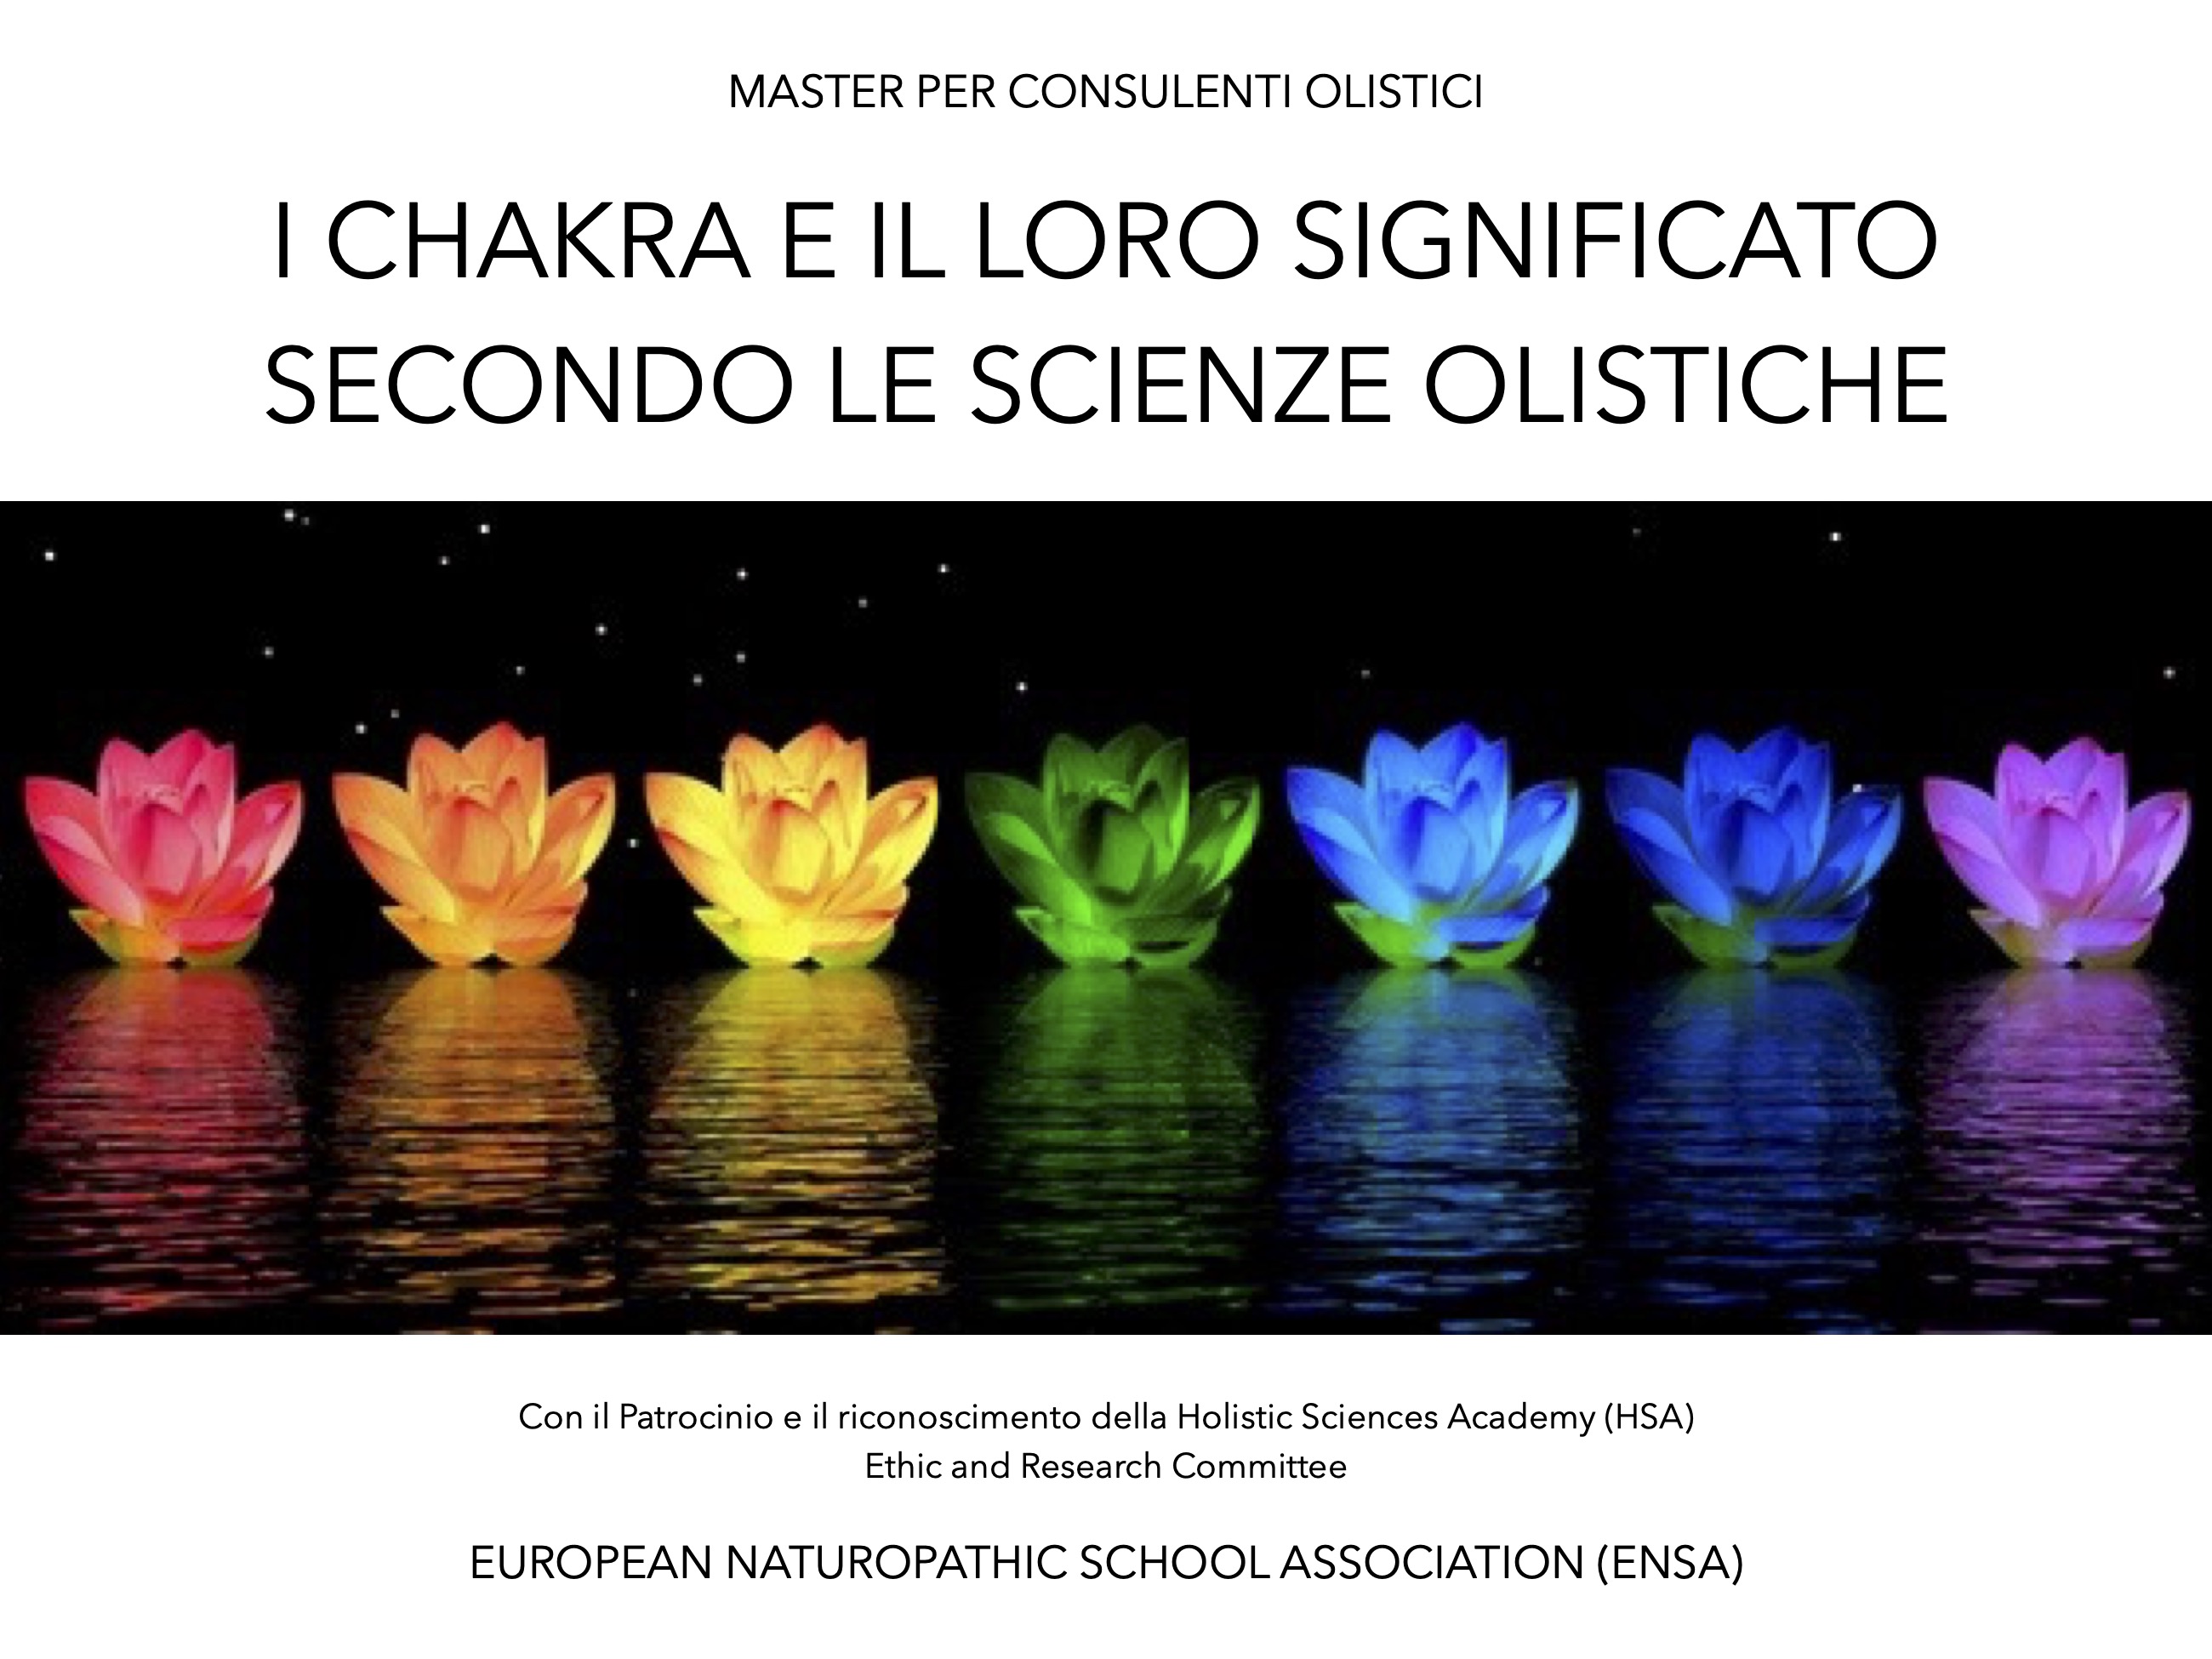 I chakra e il loro significato secondo le scienze olistiche